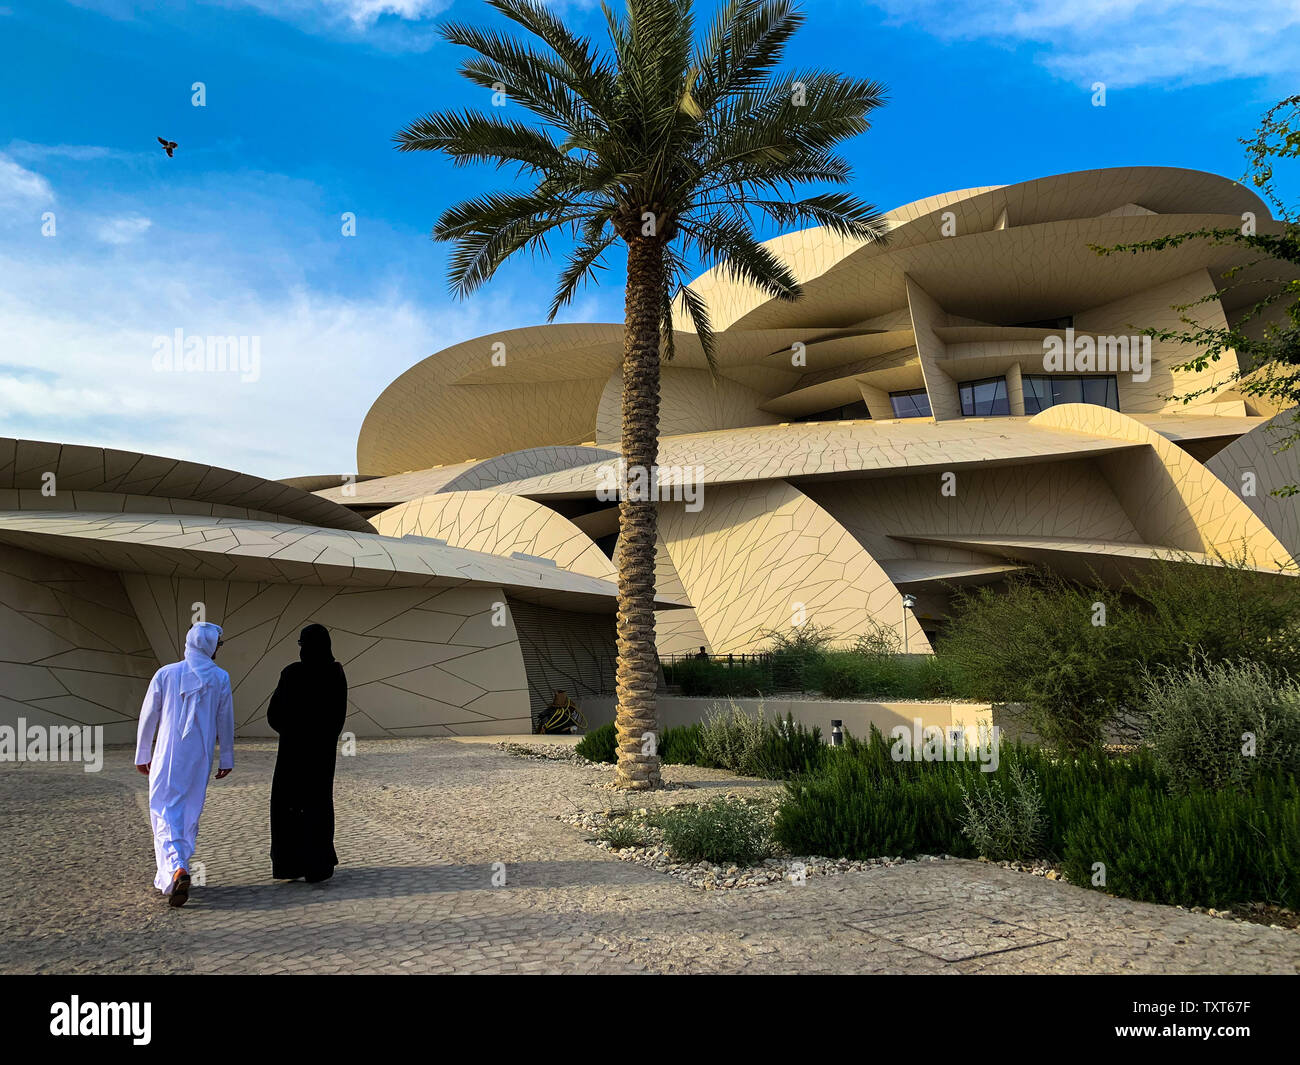 Musée national du Qatar avec l'Arabe non identifié en train de marcher, de Doha. Le musée est en forme d'une rose du désert et est nouvellement construit. Banque D'Images